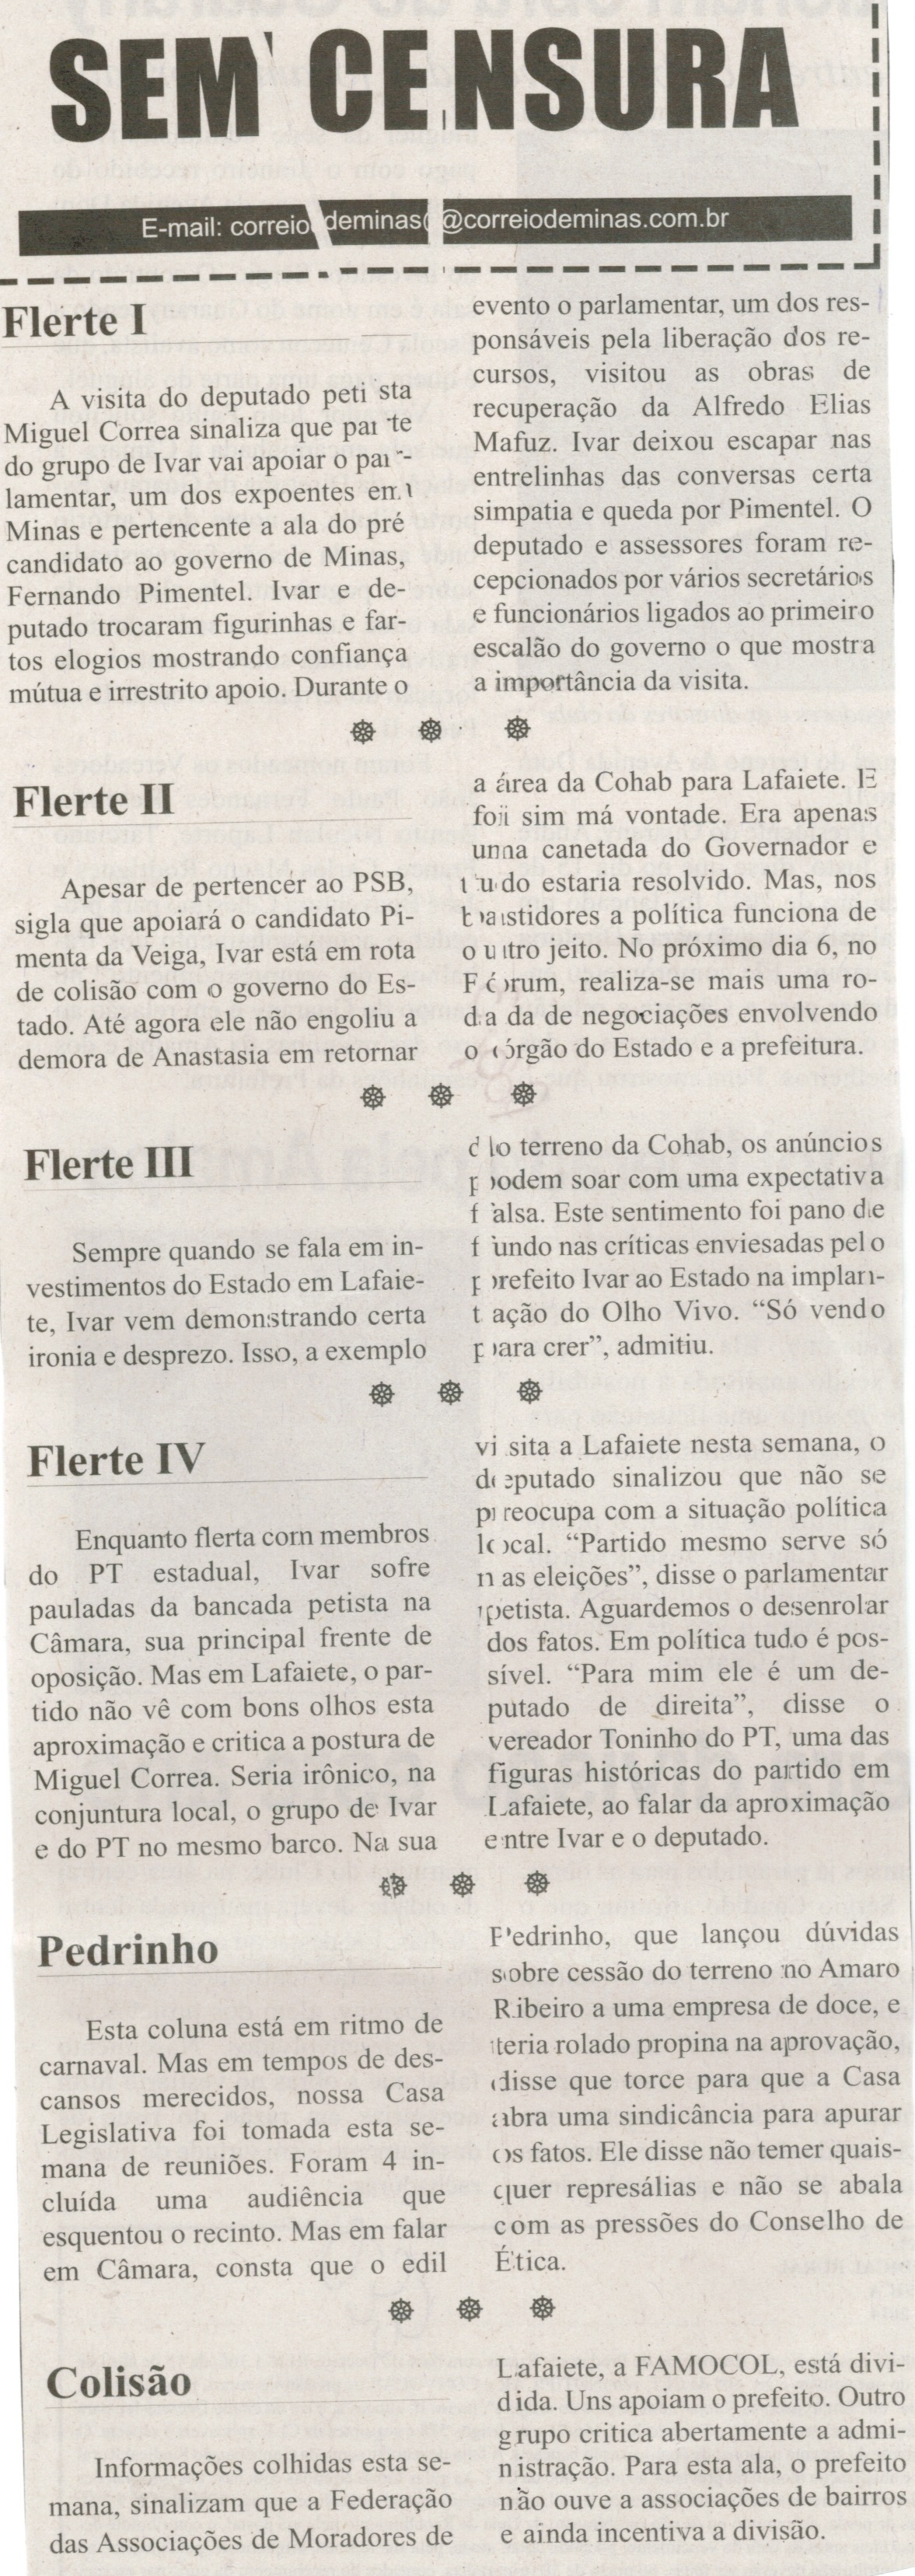 Flerte I; Pedrinho. Correio de Minas, Conselheiro Lafaiete, Sem Censura,  28 fev. 2014, p. 3